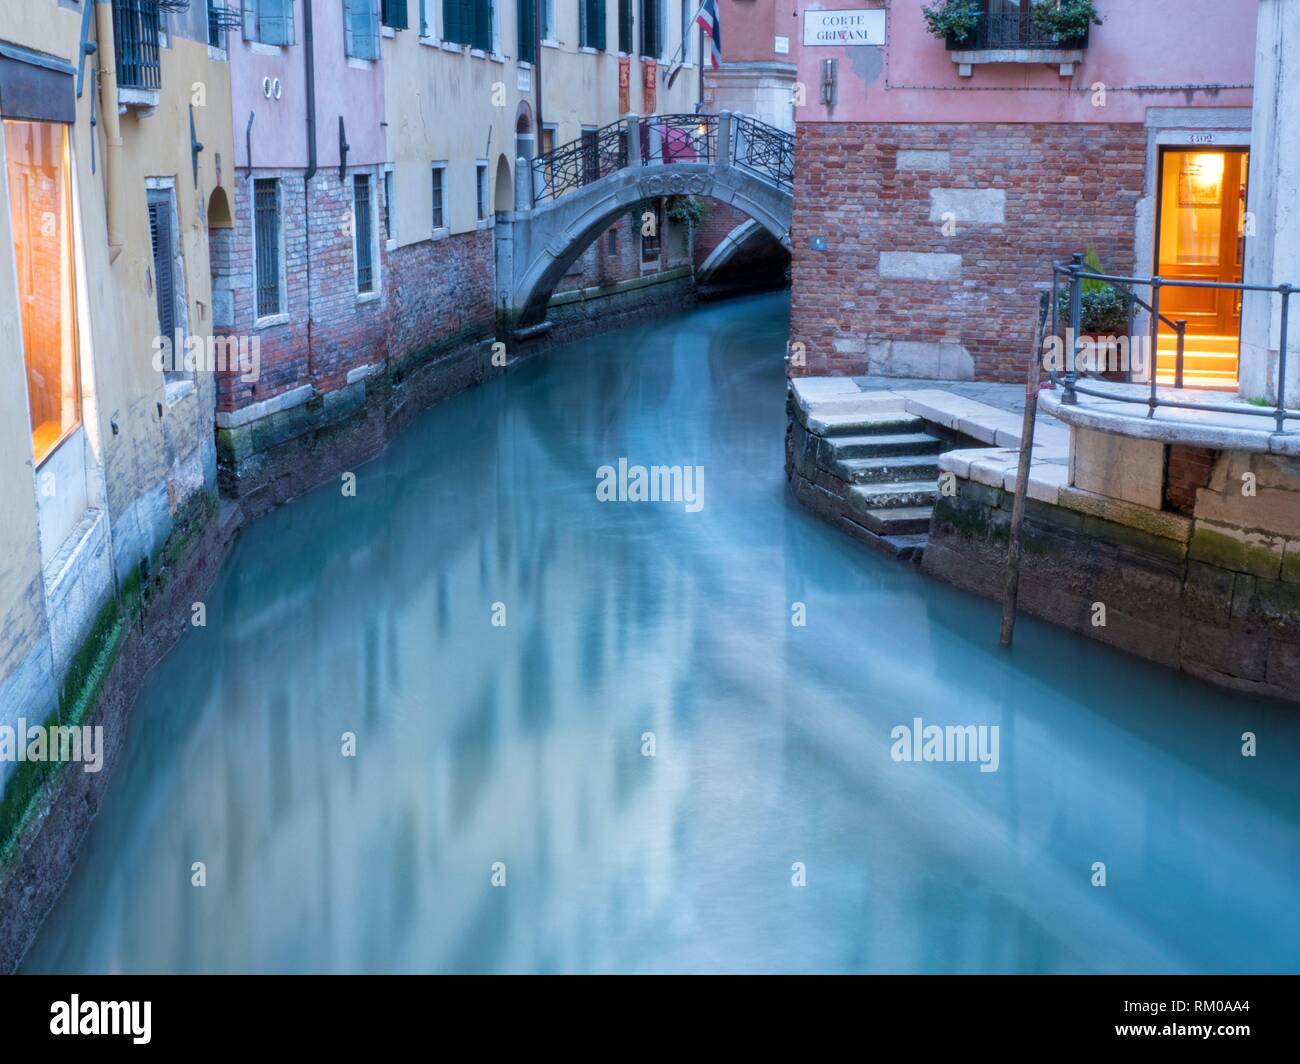 Canal, Venice, Italy. Stock Photo